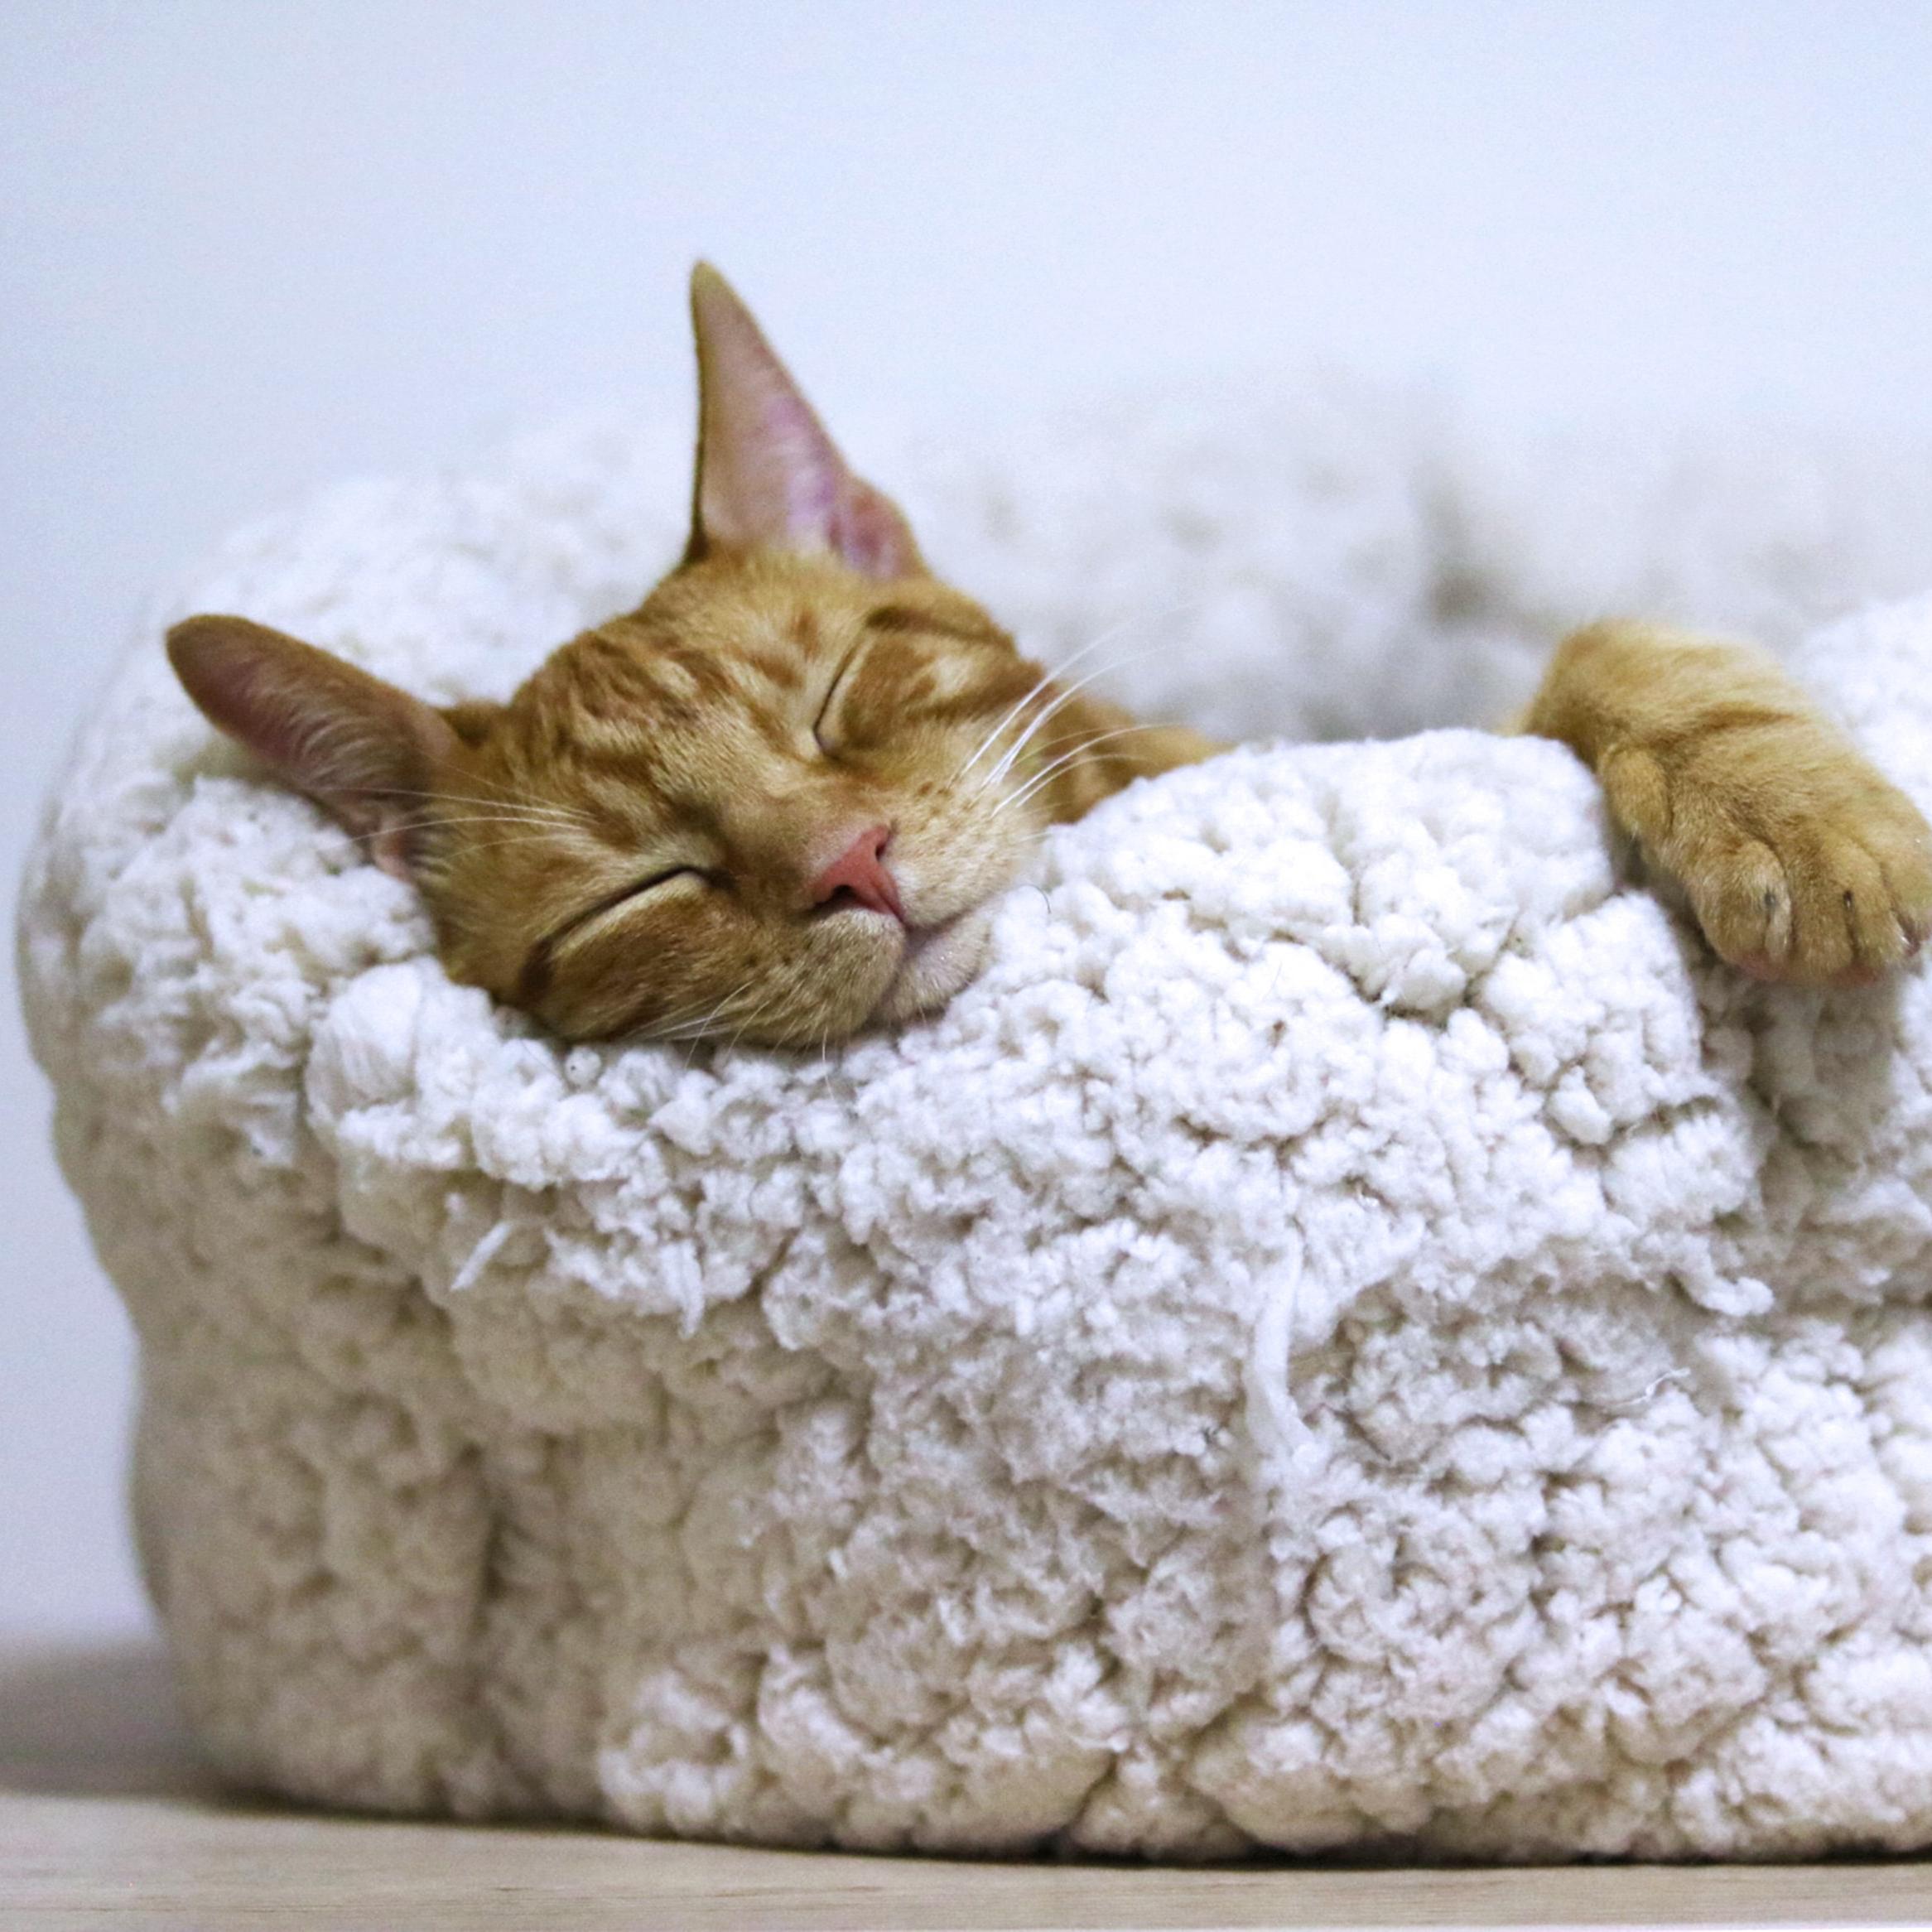 Imagen de un gato atigrado naranja durmiendo sobre una cama de borreguillo en color crudo